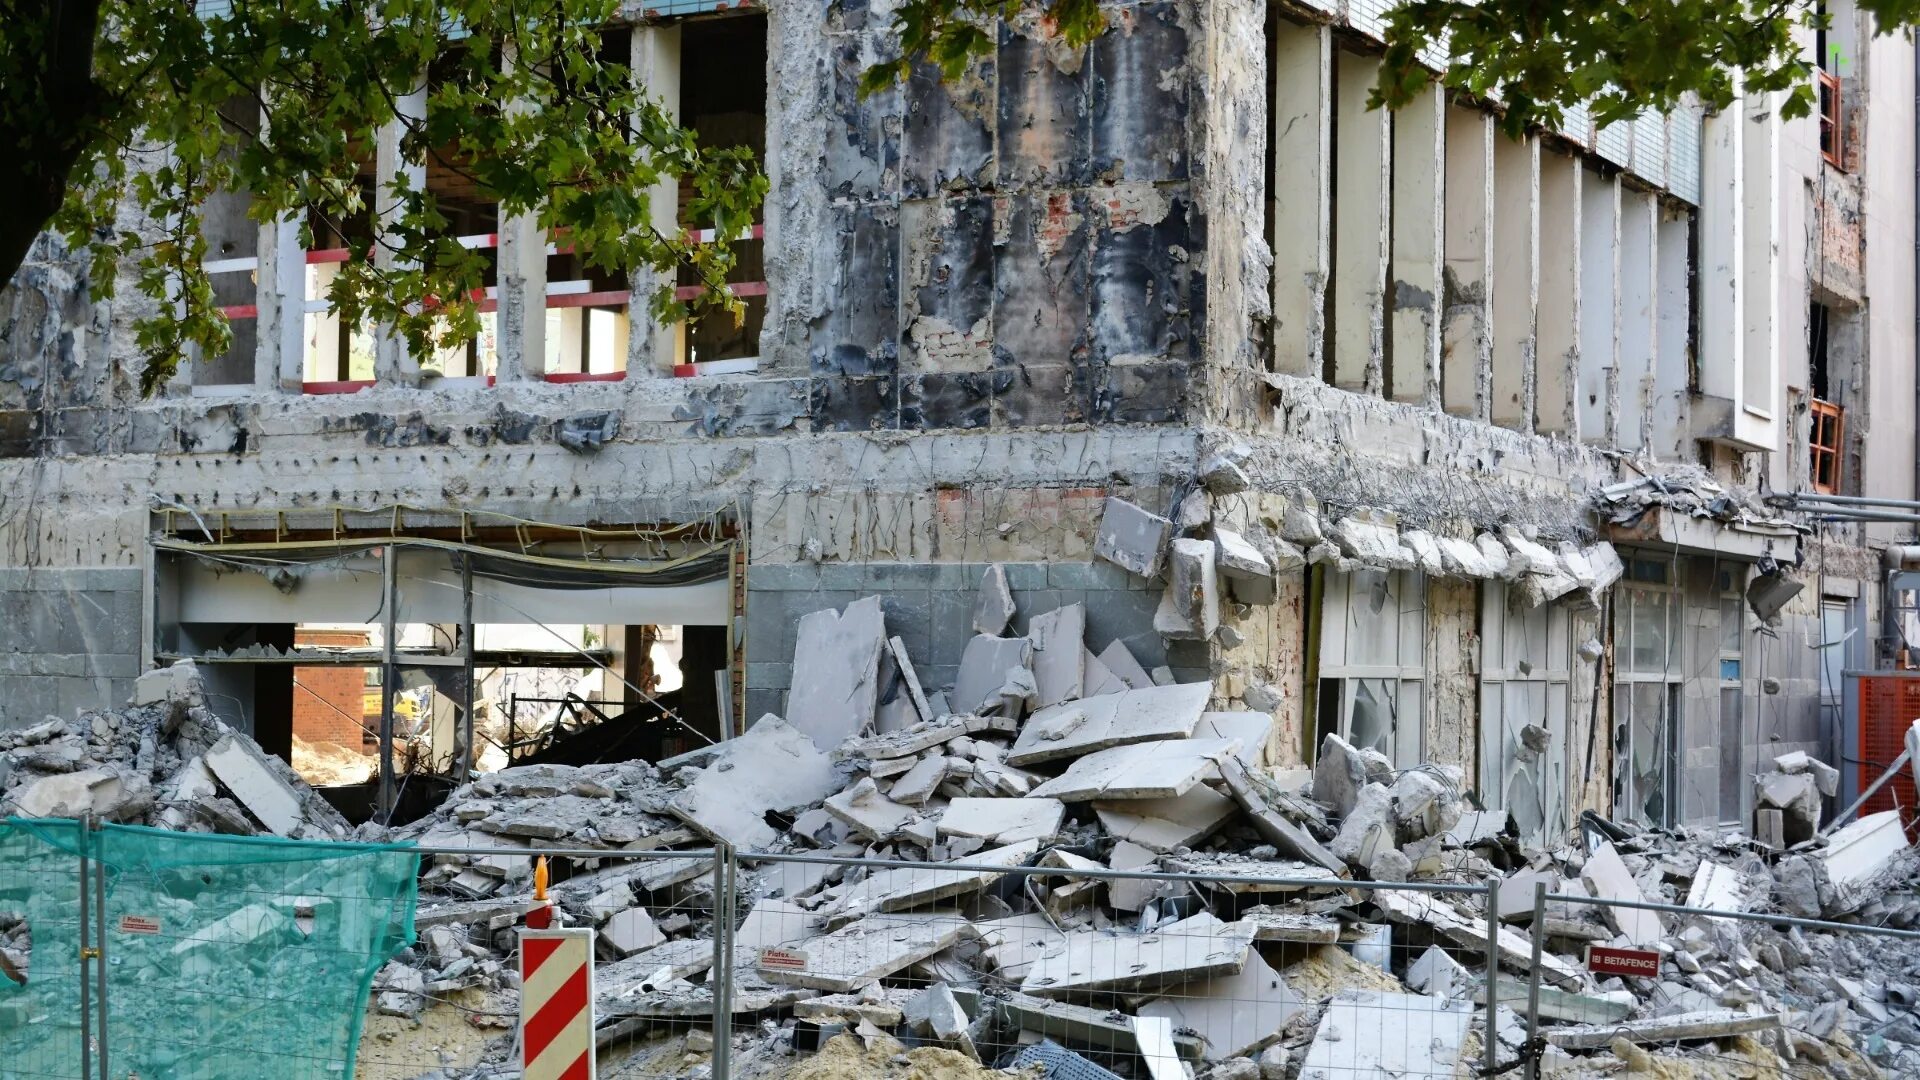 Другое землетрясения. Землетрясение на Гаити 2010 президентский дворец. Нефтегорск землетрясение 1995. Землетрясение в Турции 2023. Турция землетрясение сейчас 2023.